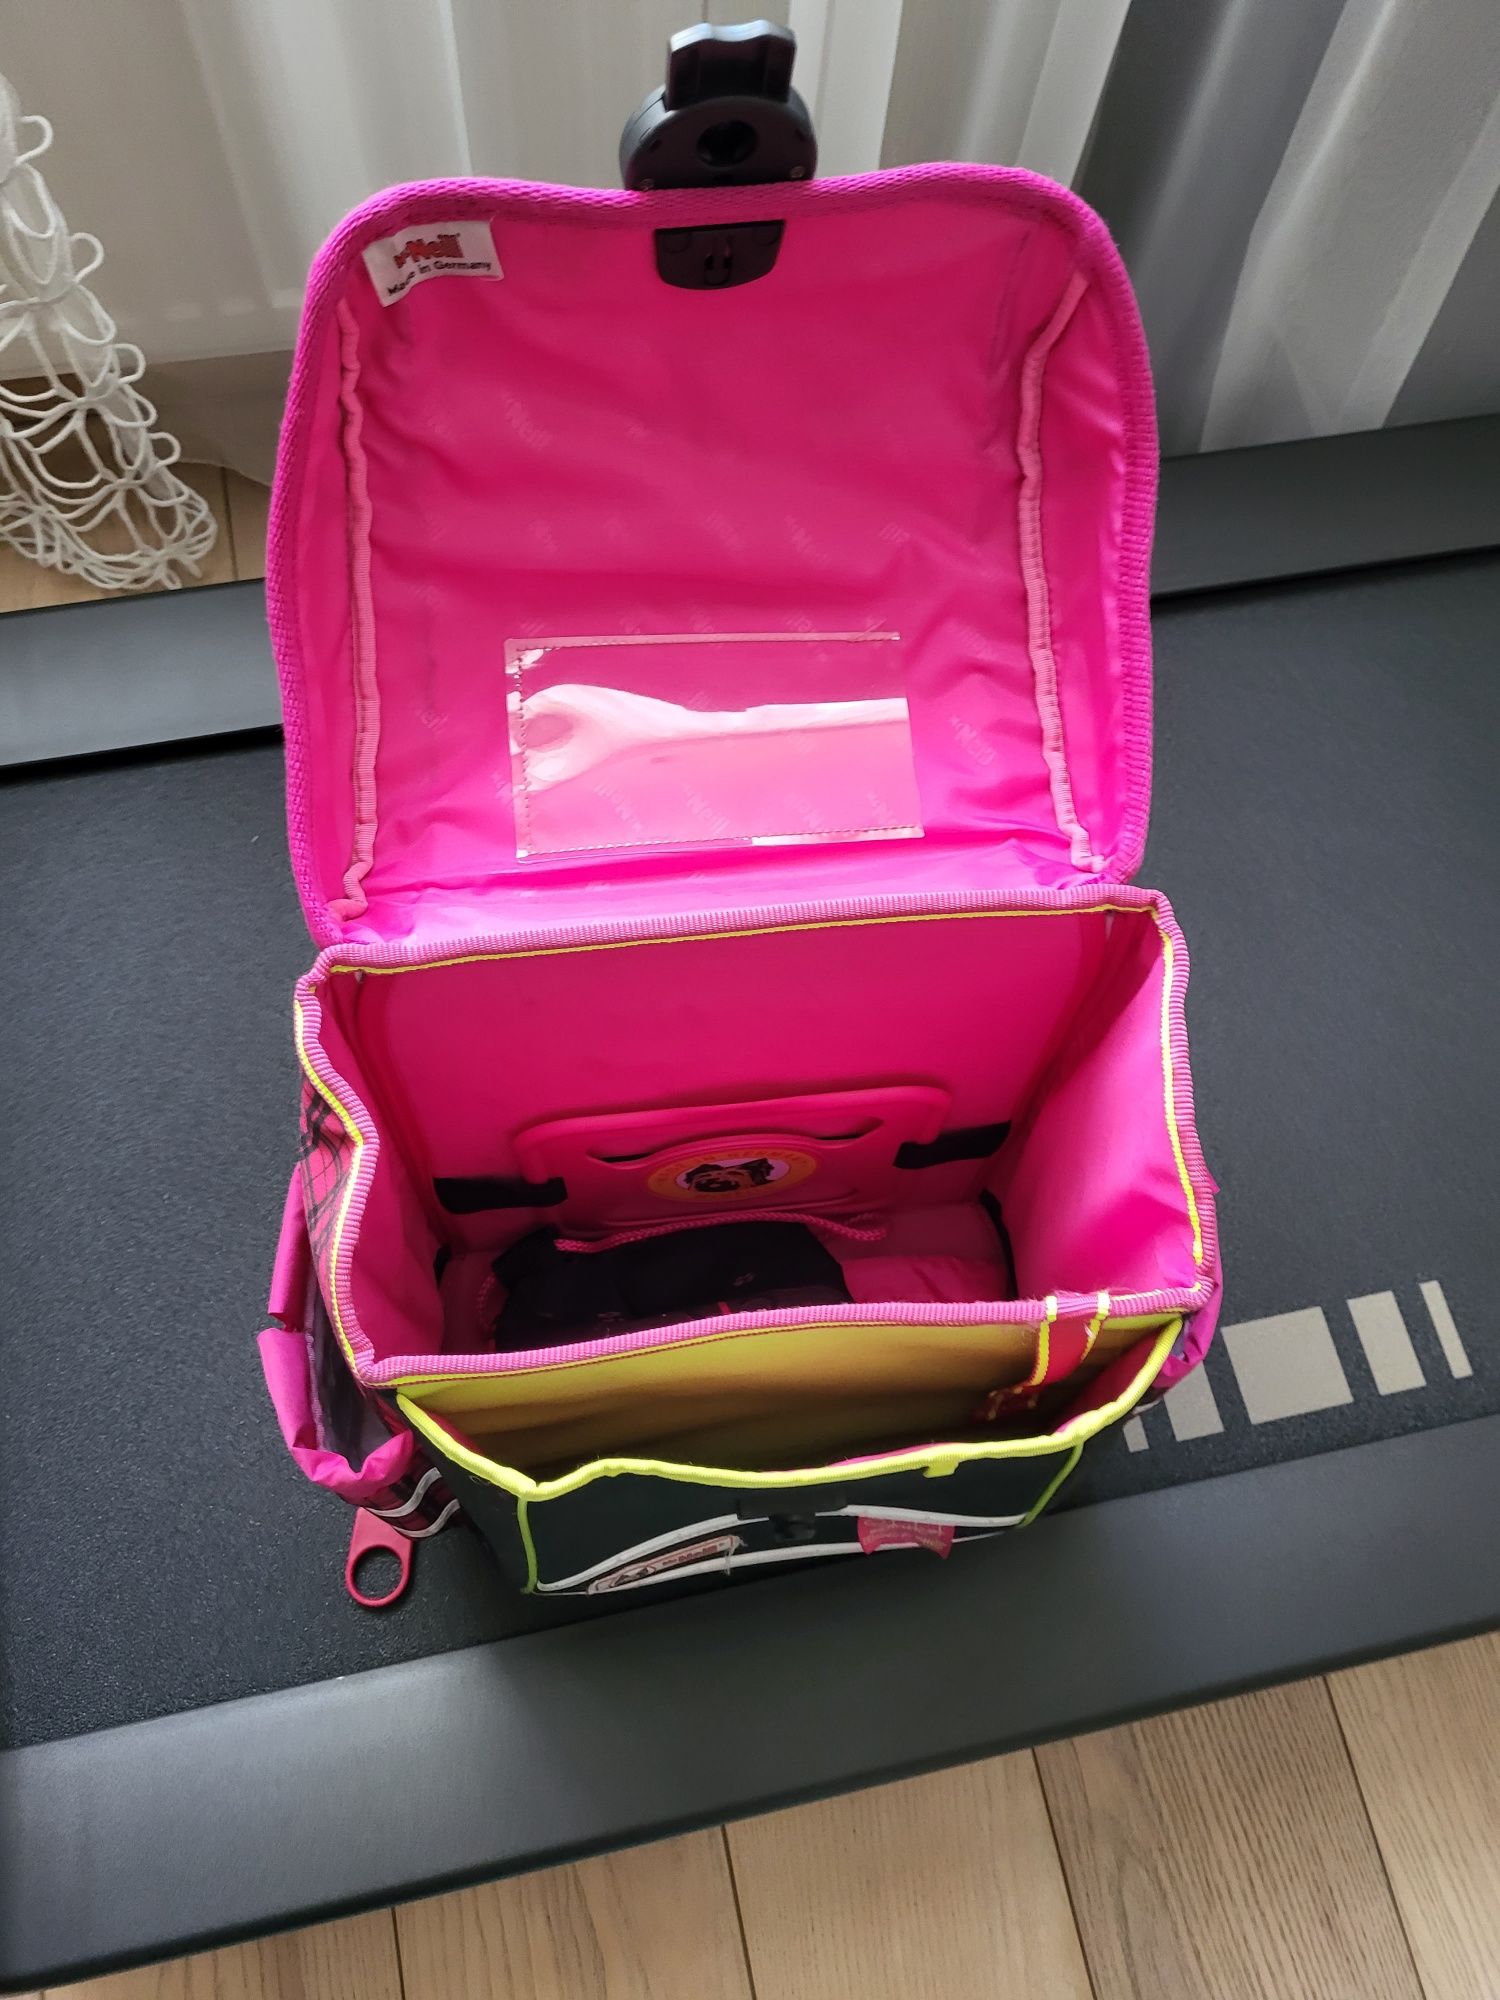 Шкільний рюкзак для дівчаток McNeill + 2 пенала + сумка для спортивног